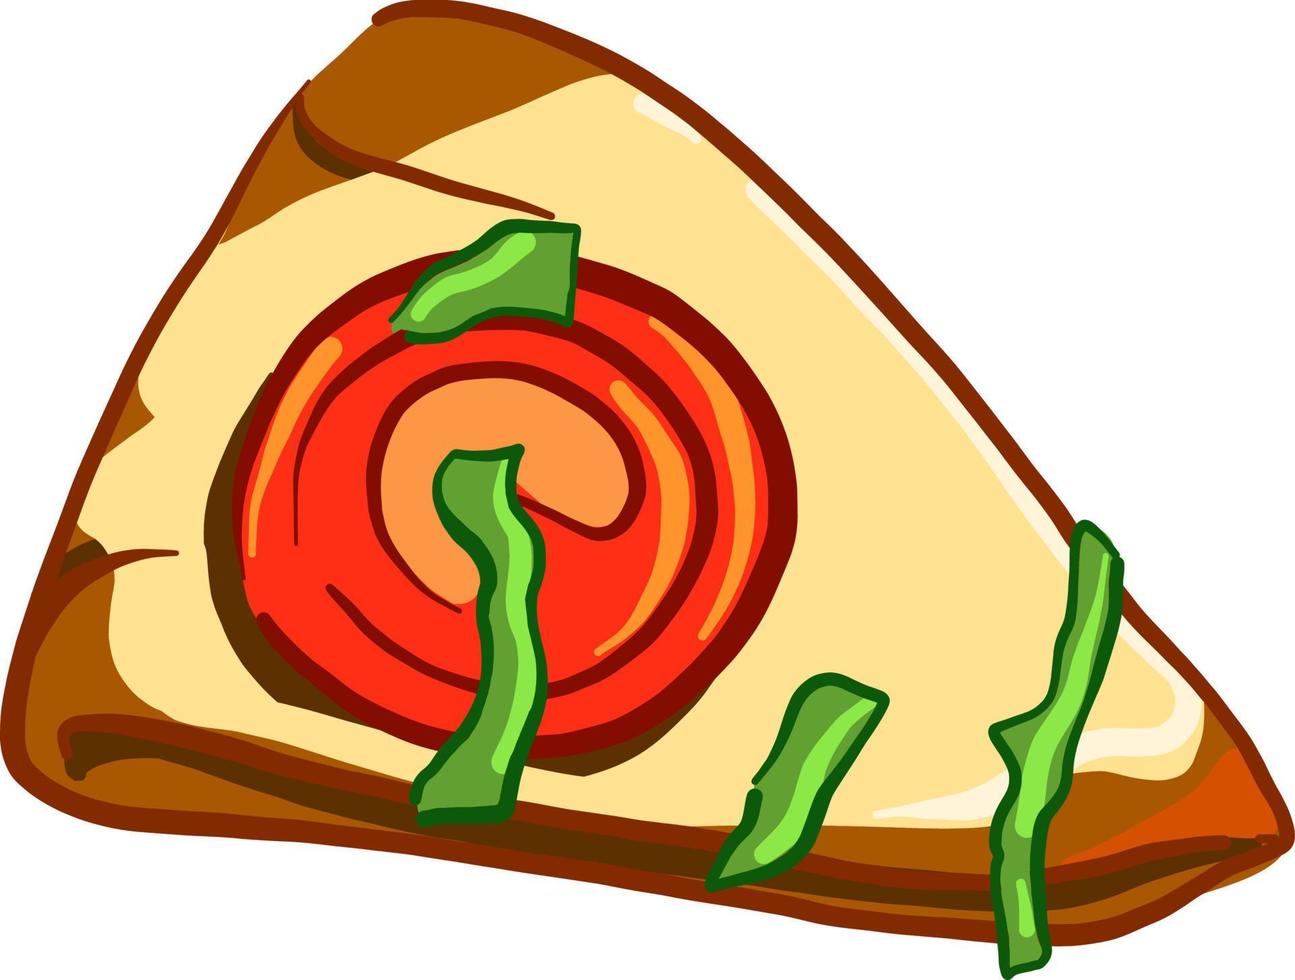 Tranche de pizza, illustration, vecteur sur fond blanc